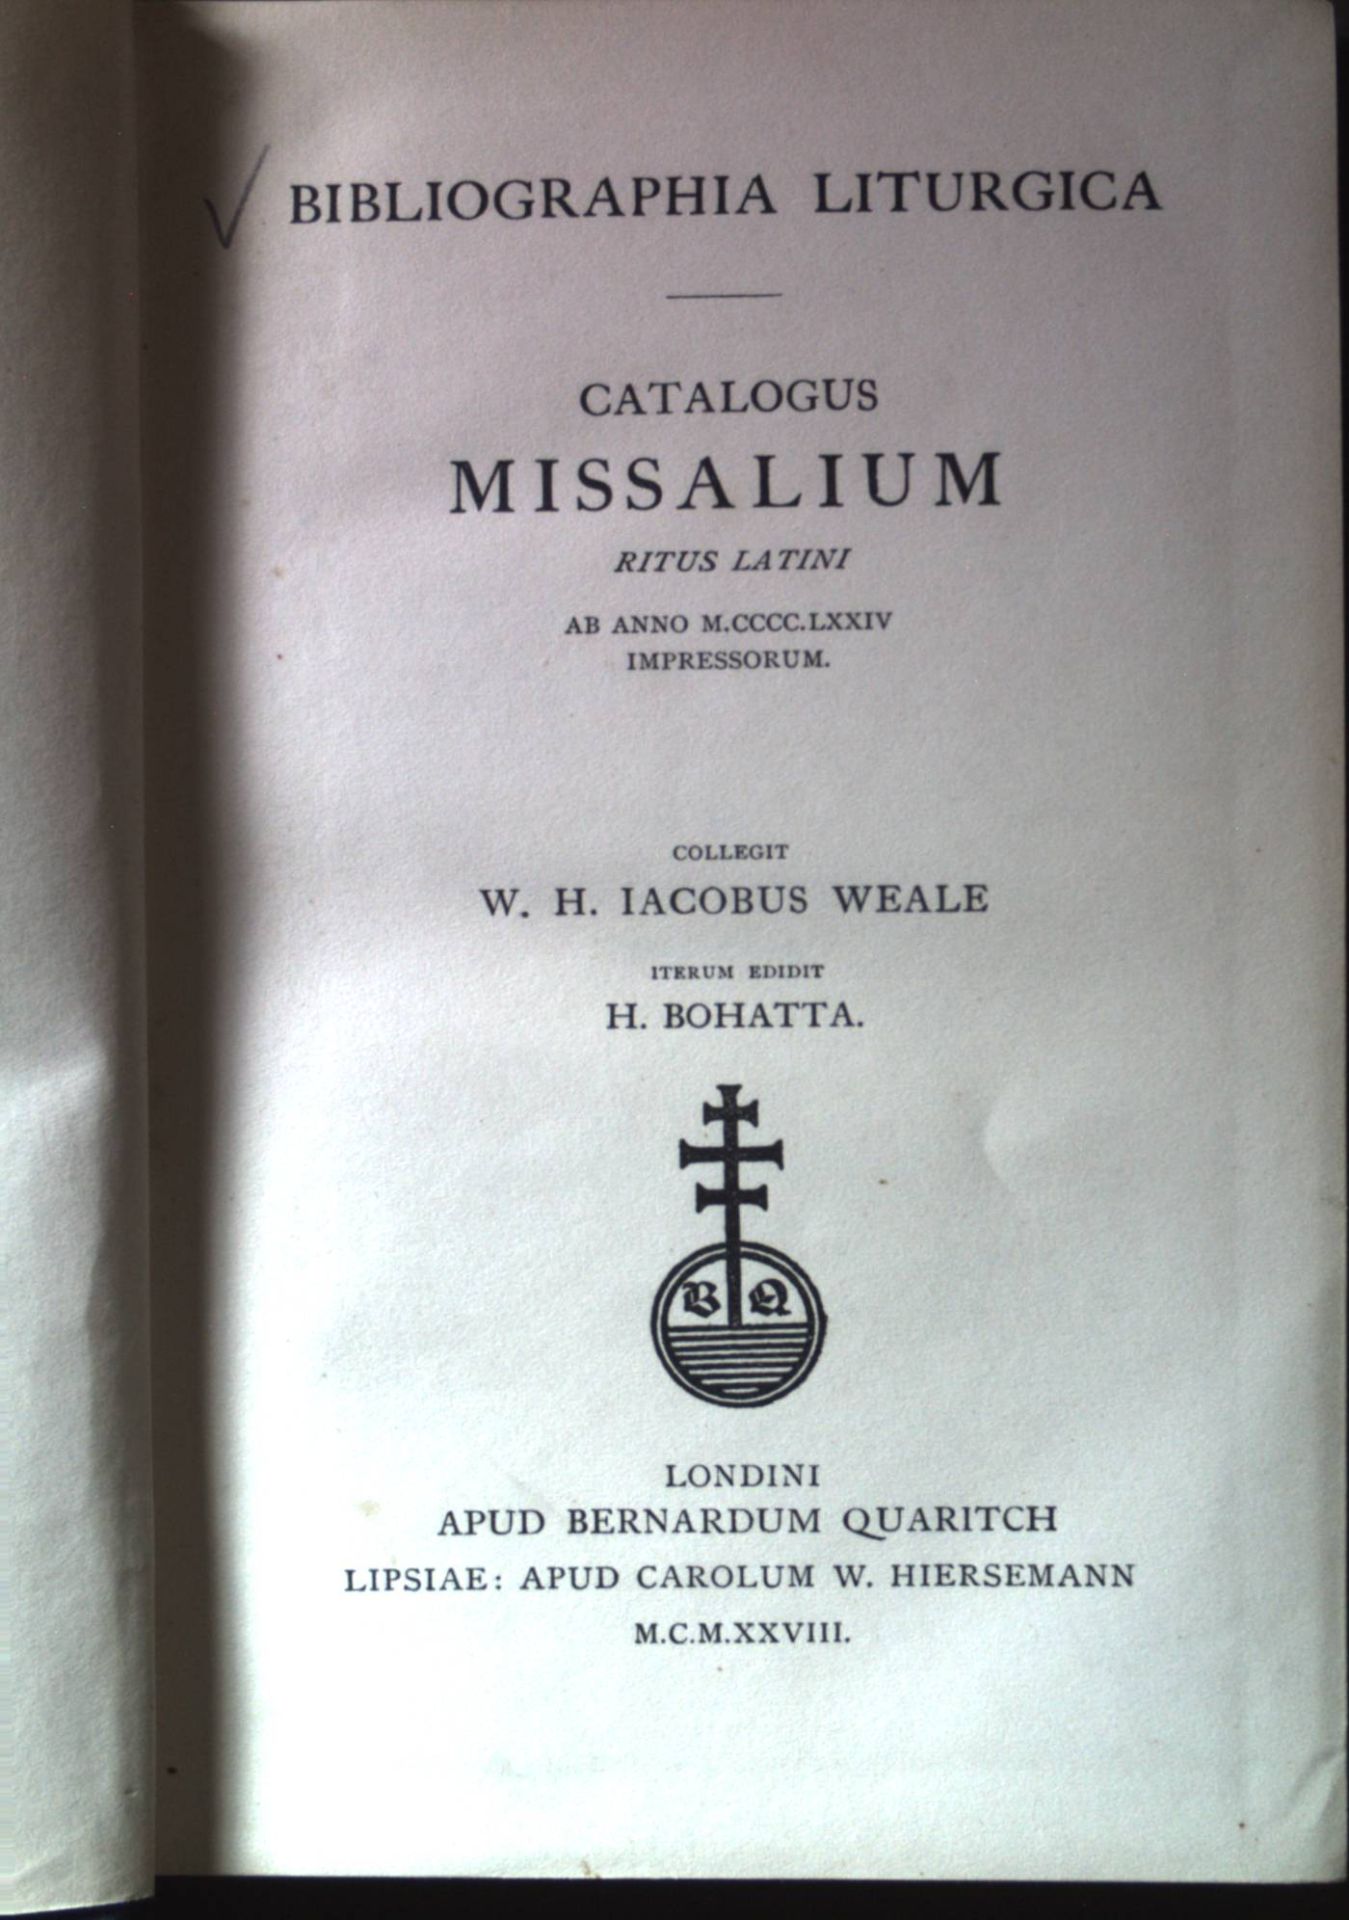 Catalogus missalium ritus Latini ab anno 1474 impressorum bibliographia liturgica. - Weale, William H. James und Hanns Bohatta